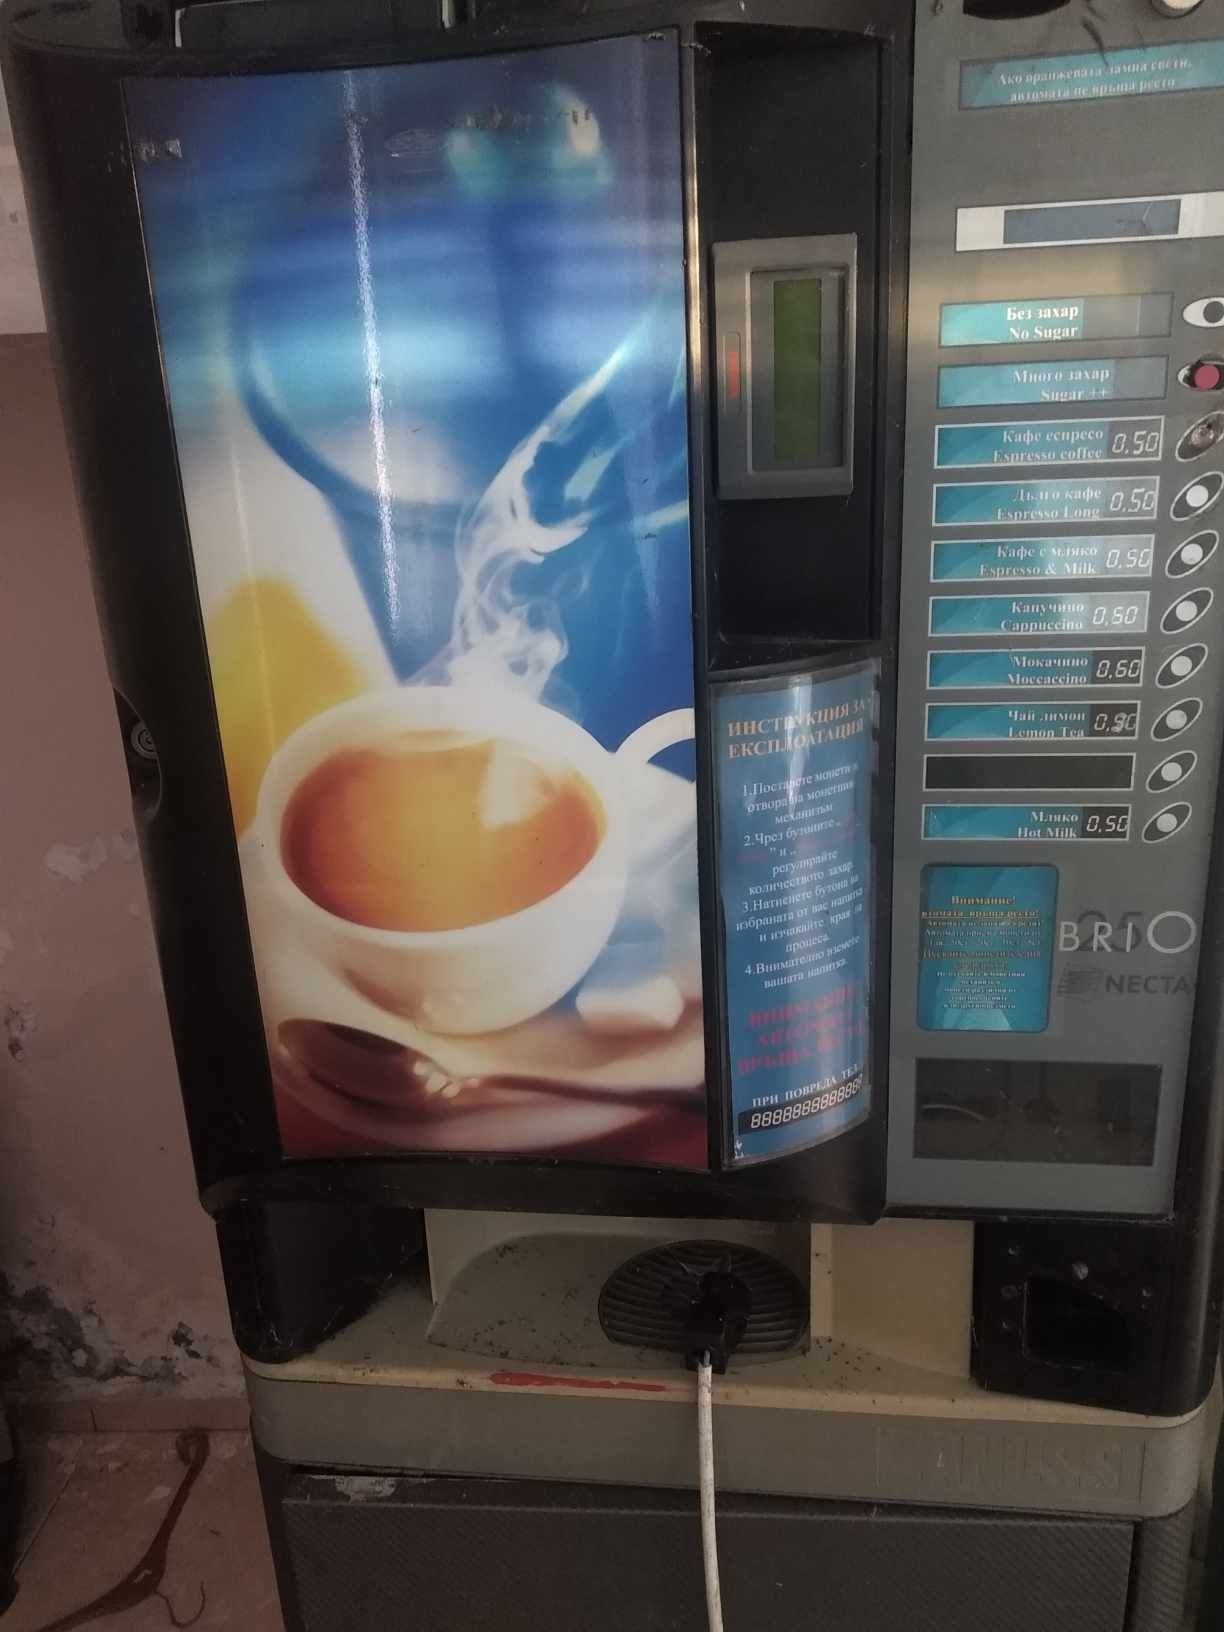 Кафе автомат с развален монетник